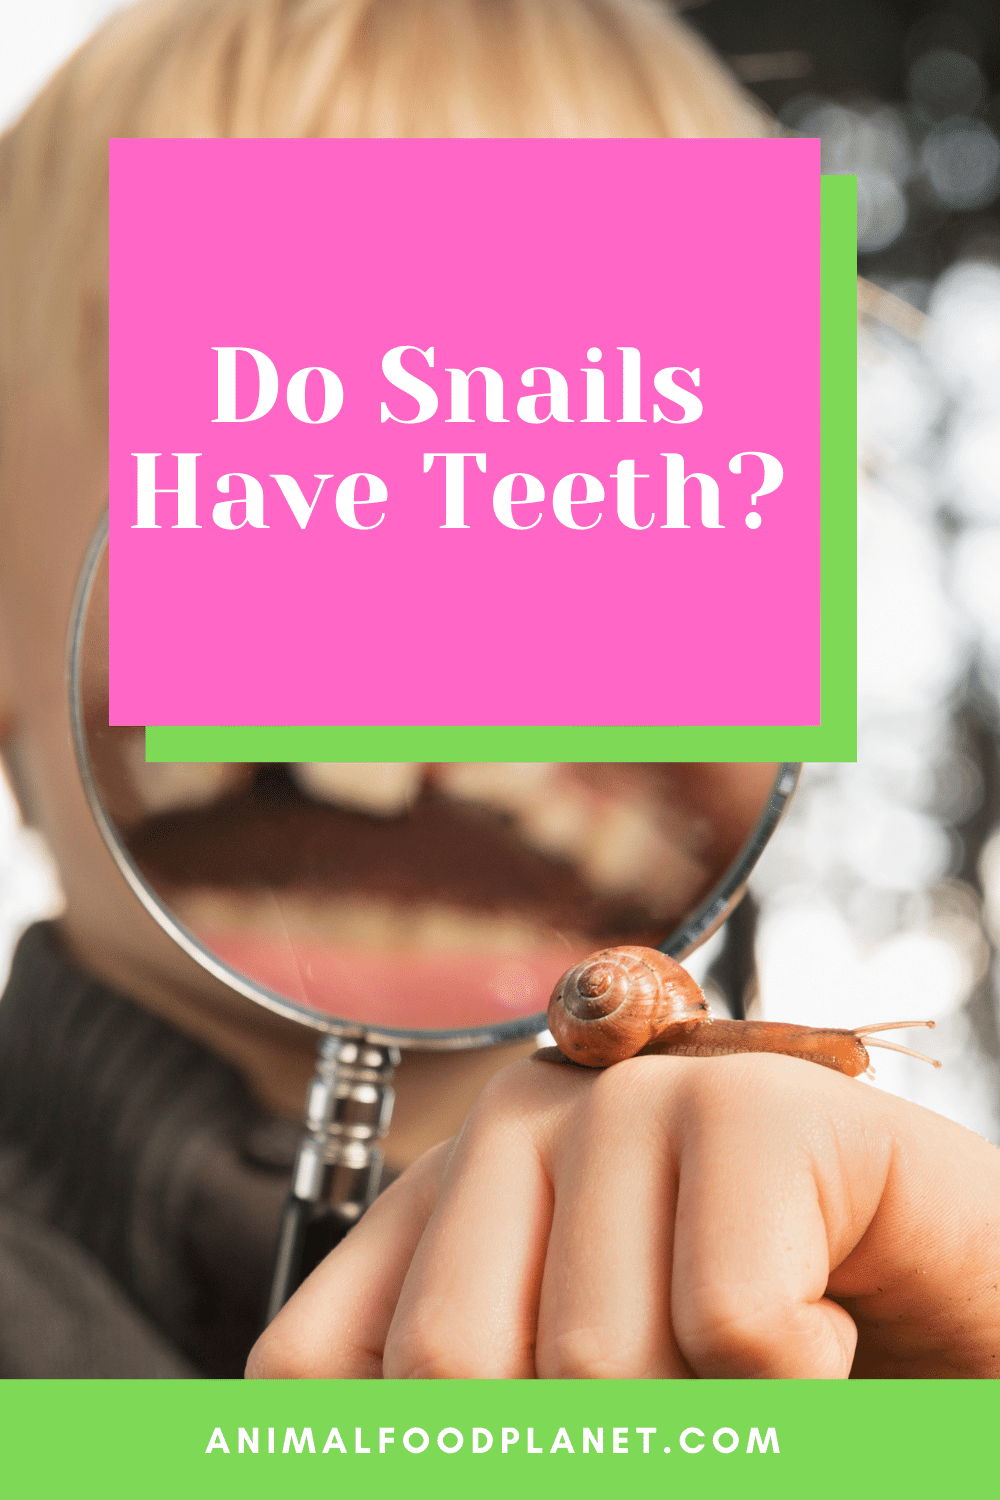 Do Snails Have Teeth?